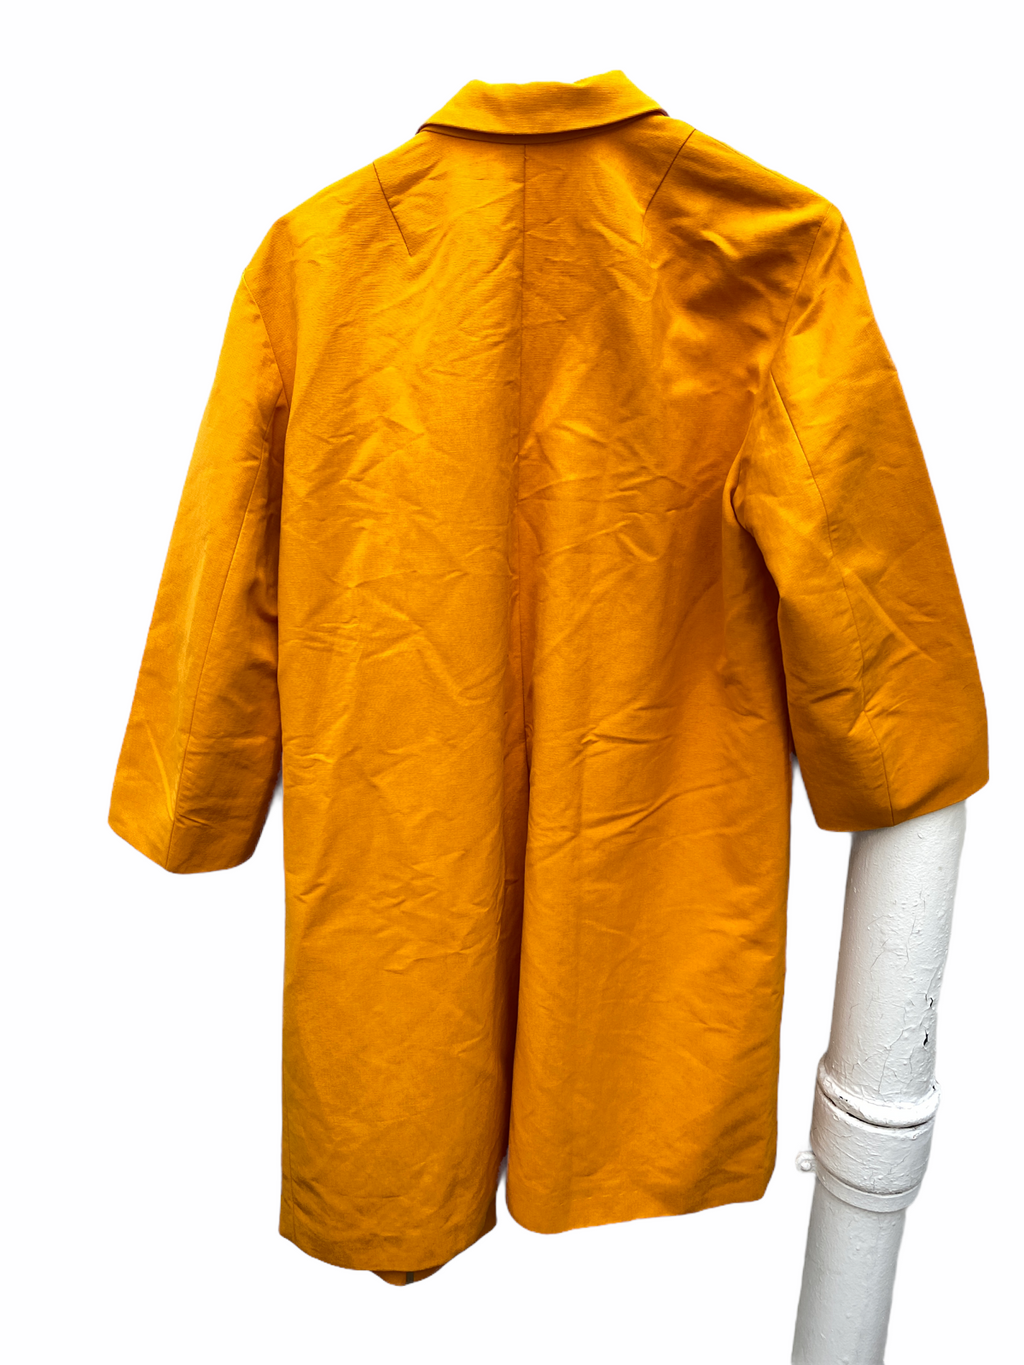 Oversized Orange Coat 3/4 Sleeves